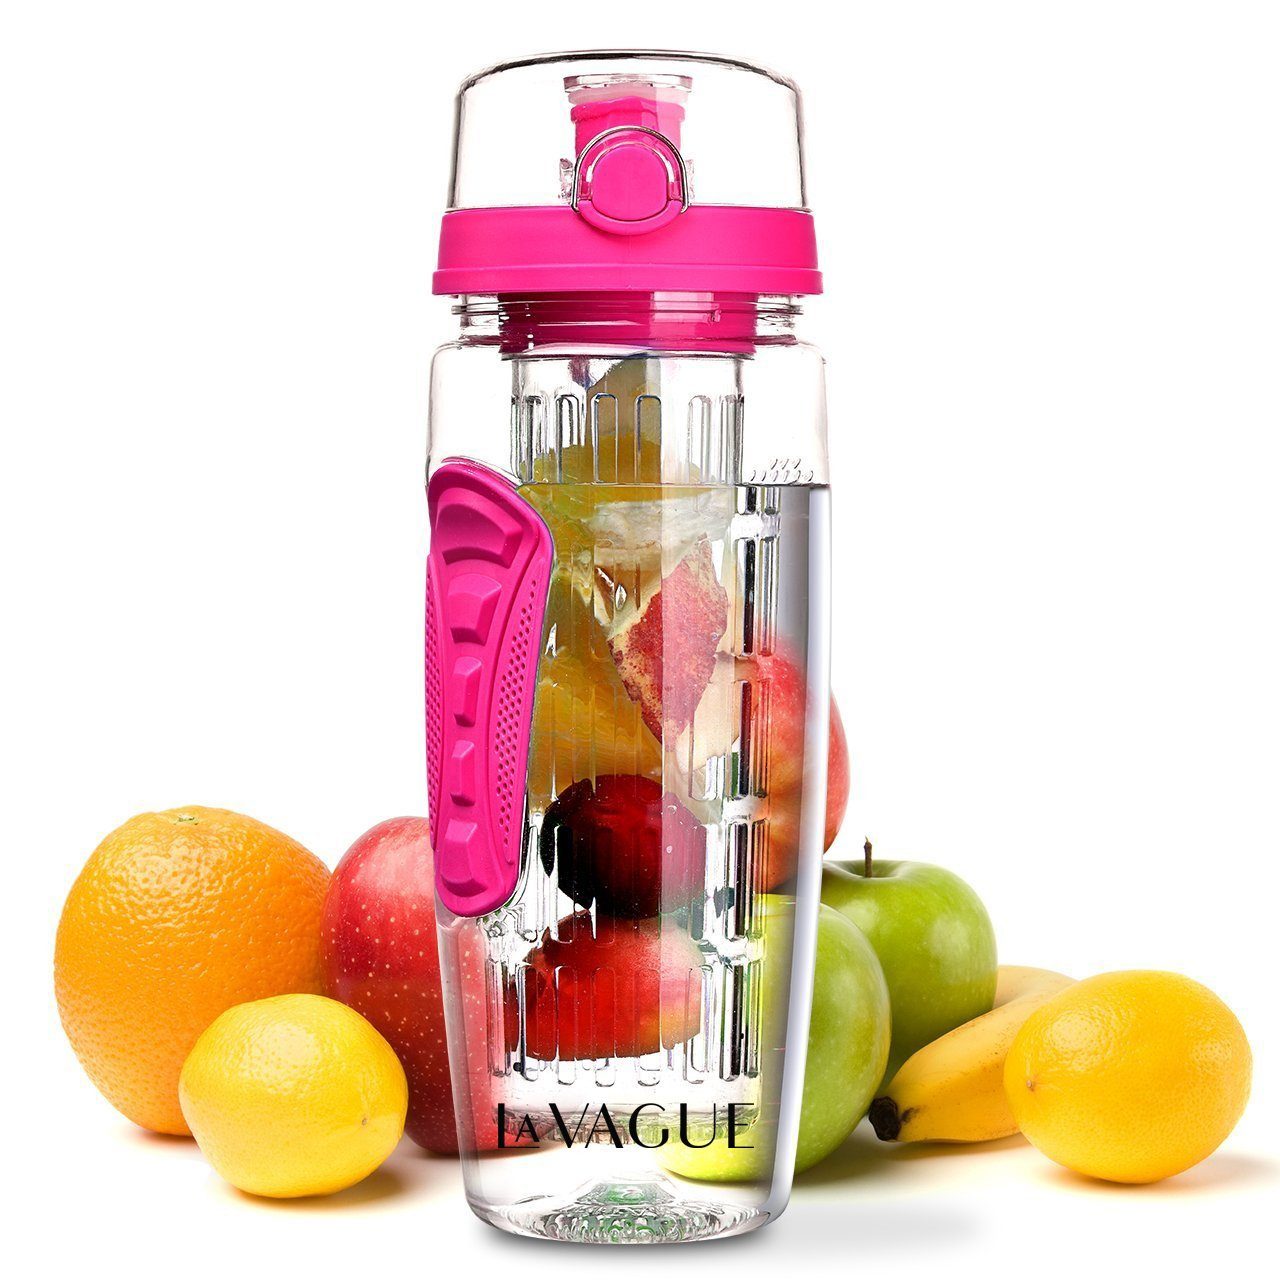 LA VAGUE Trinkflasche VITALITY trinkflasche mit einsatz, Trinkflasche mit Früchtesieb für perfekt aromatisierte Getränke pink